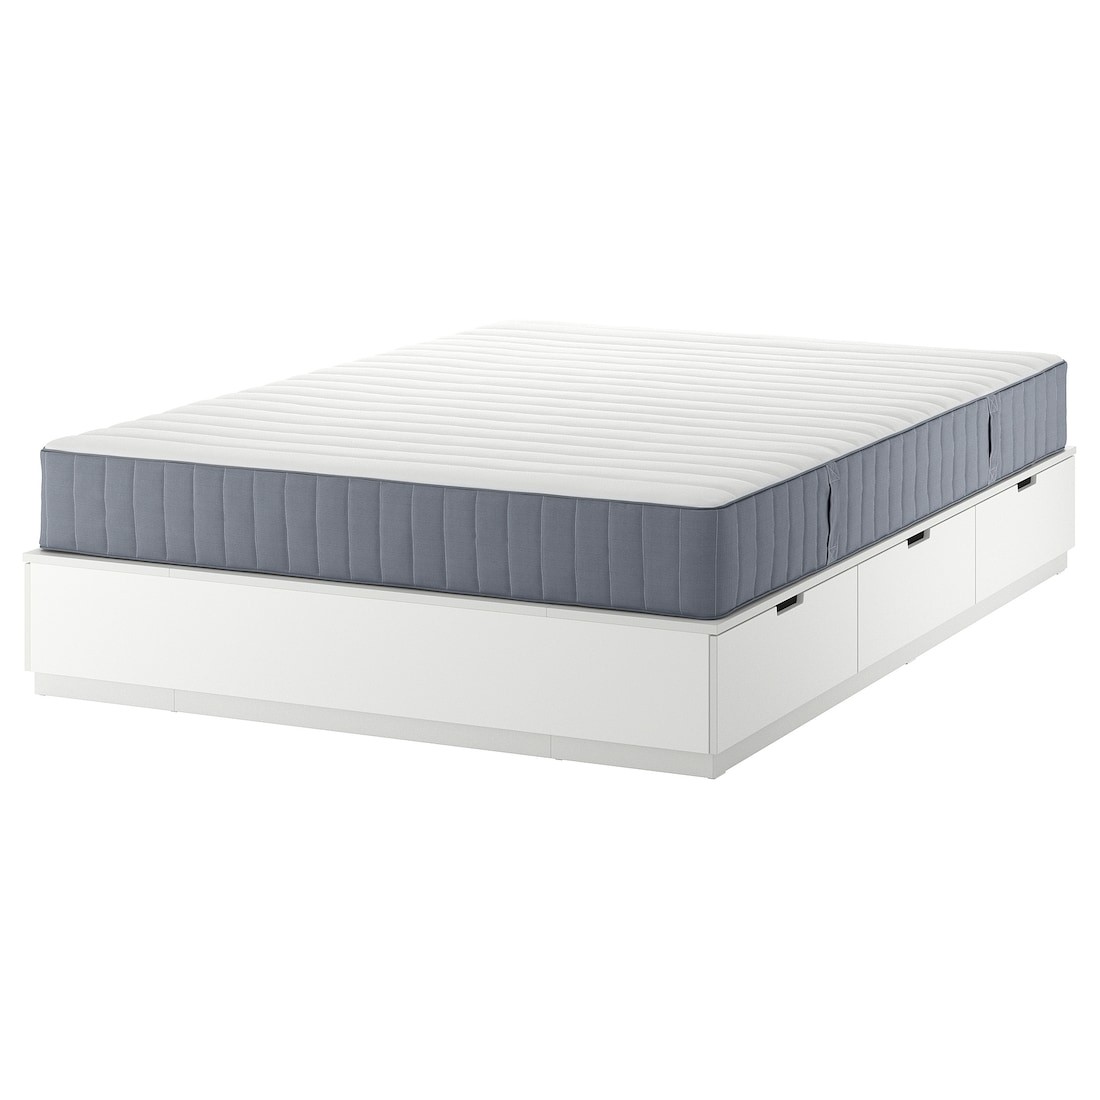 NORDLI Кровать с контейнером и матрасом, белый / Valevåg средней жесткости, 160x200 см